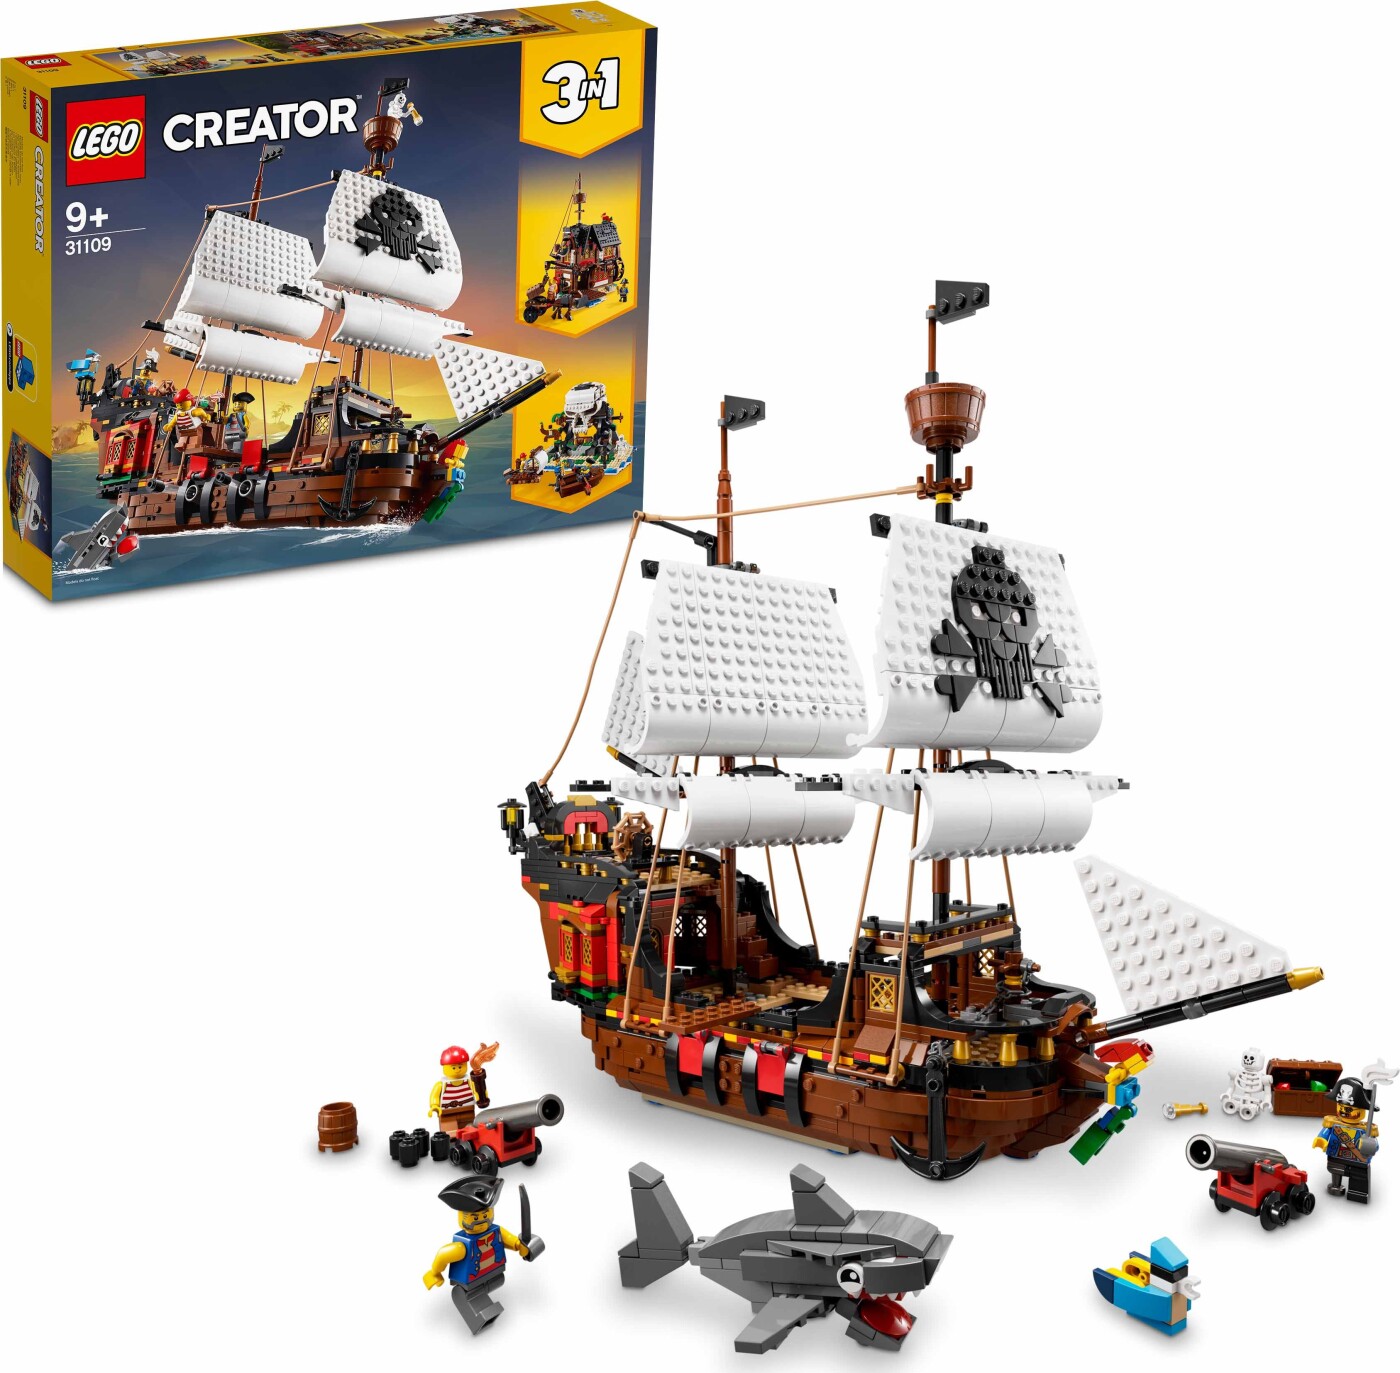 blande ledelse boykot Lego Creator - Piratskib - 31109 | Se tilbud og køb på Gucca.dk